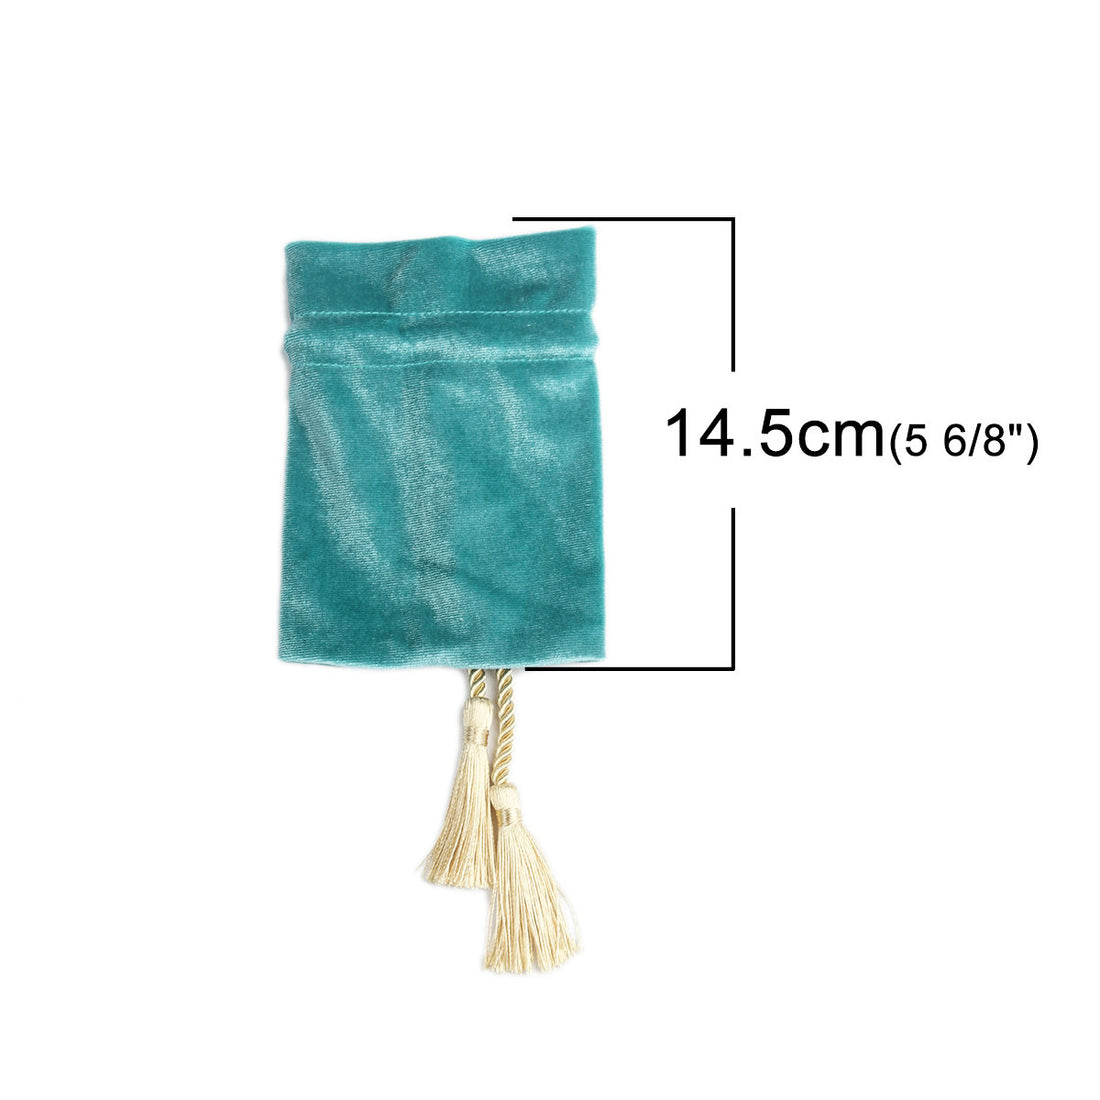 Aqua velvet pouch bag with tassel rope